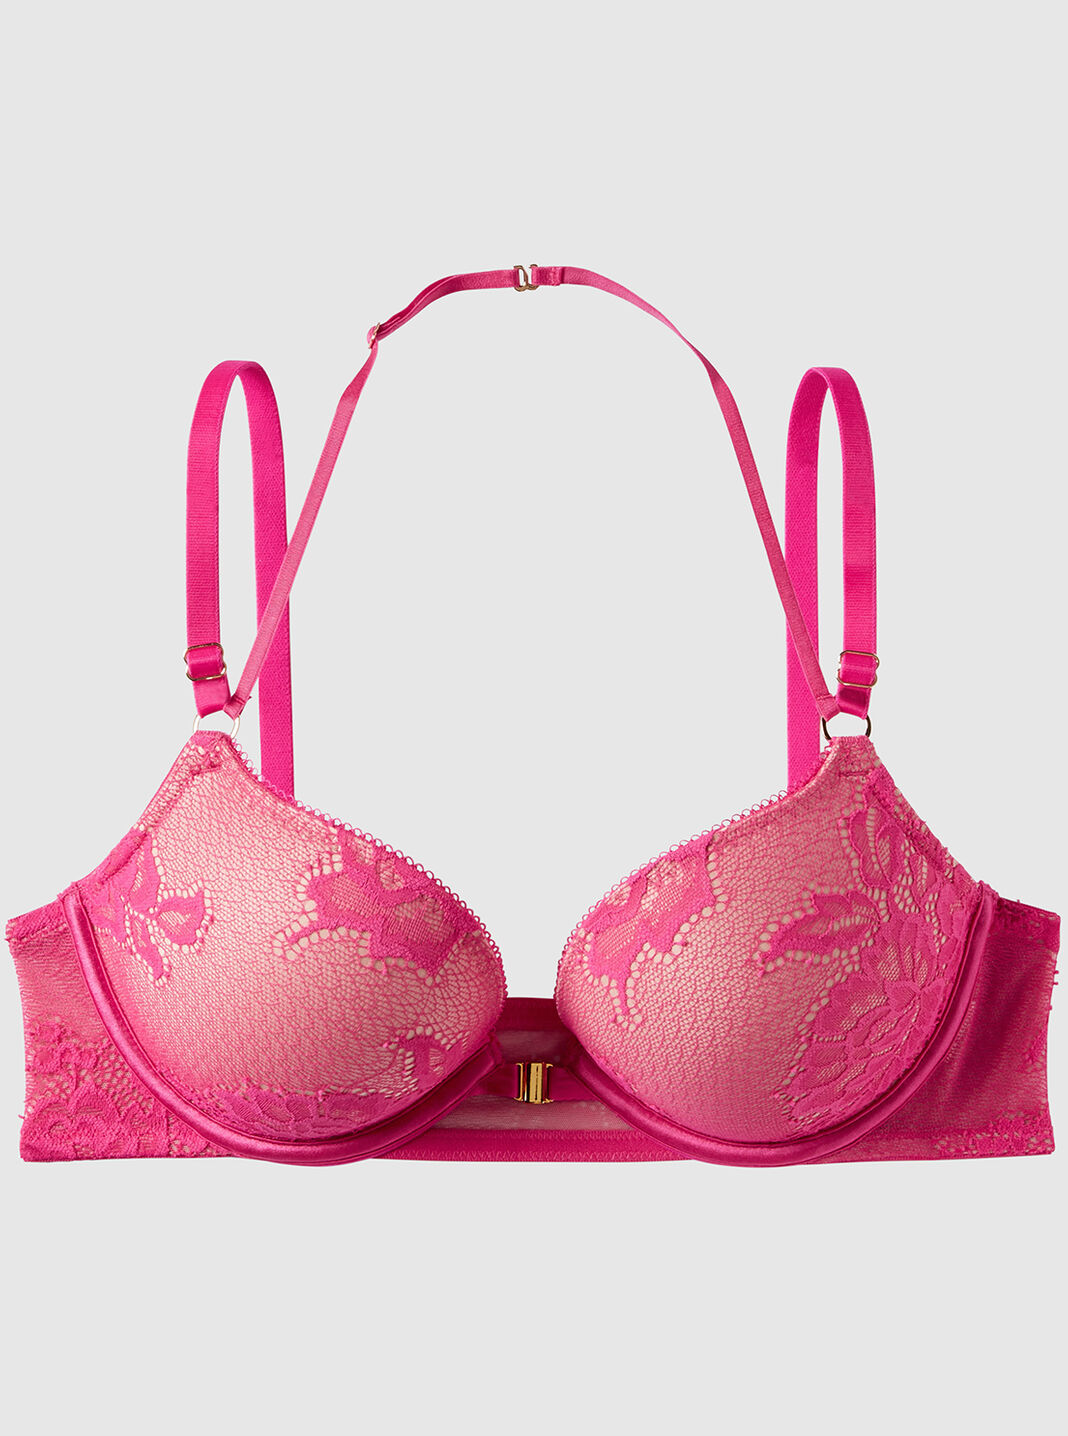 Buy SSoShHub Women Pink Cotton Blend Non-Padded Bra (38B) Online